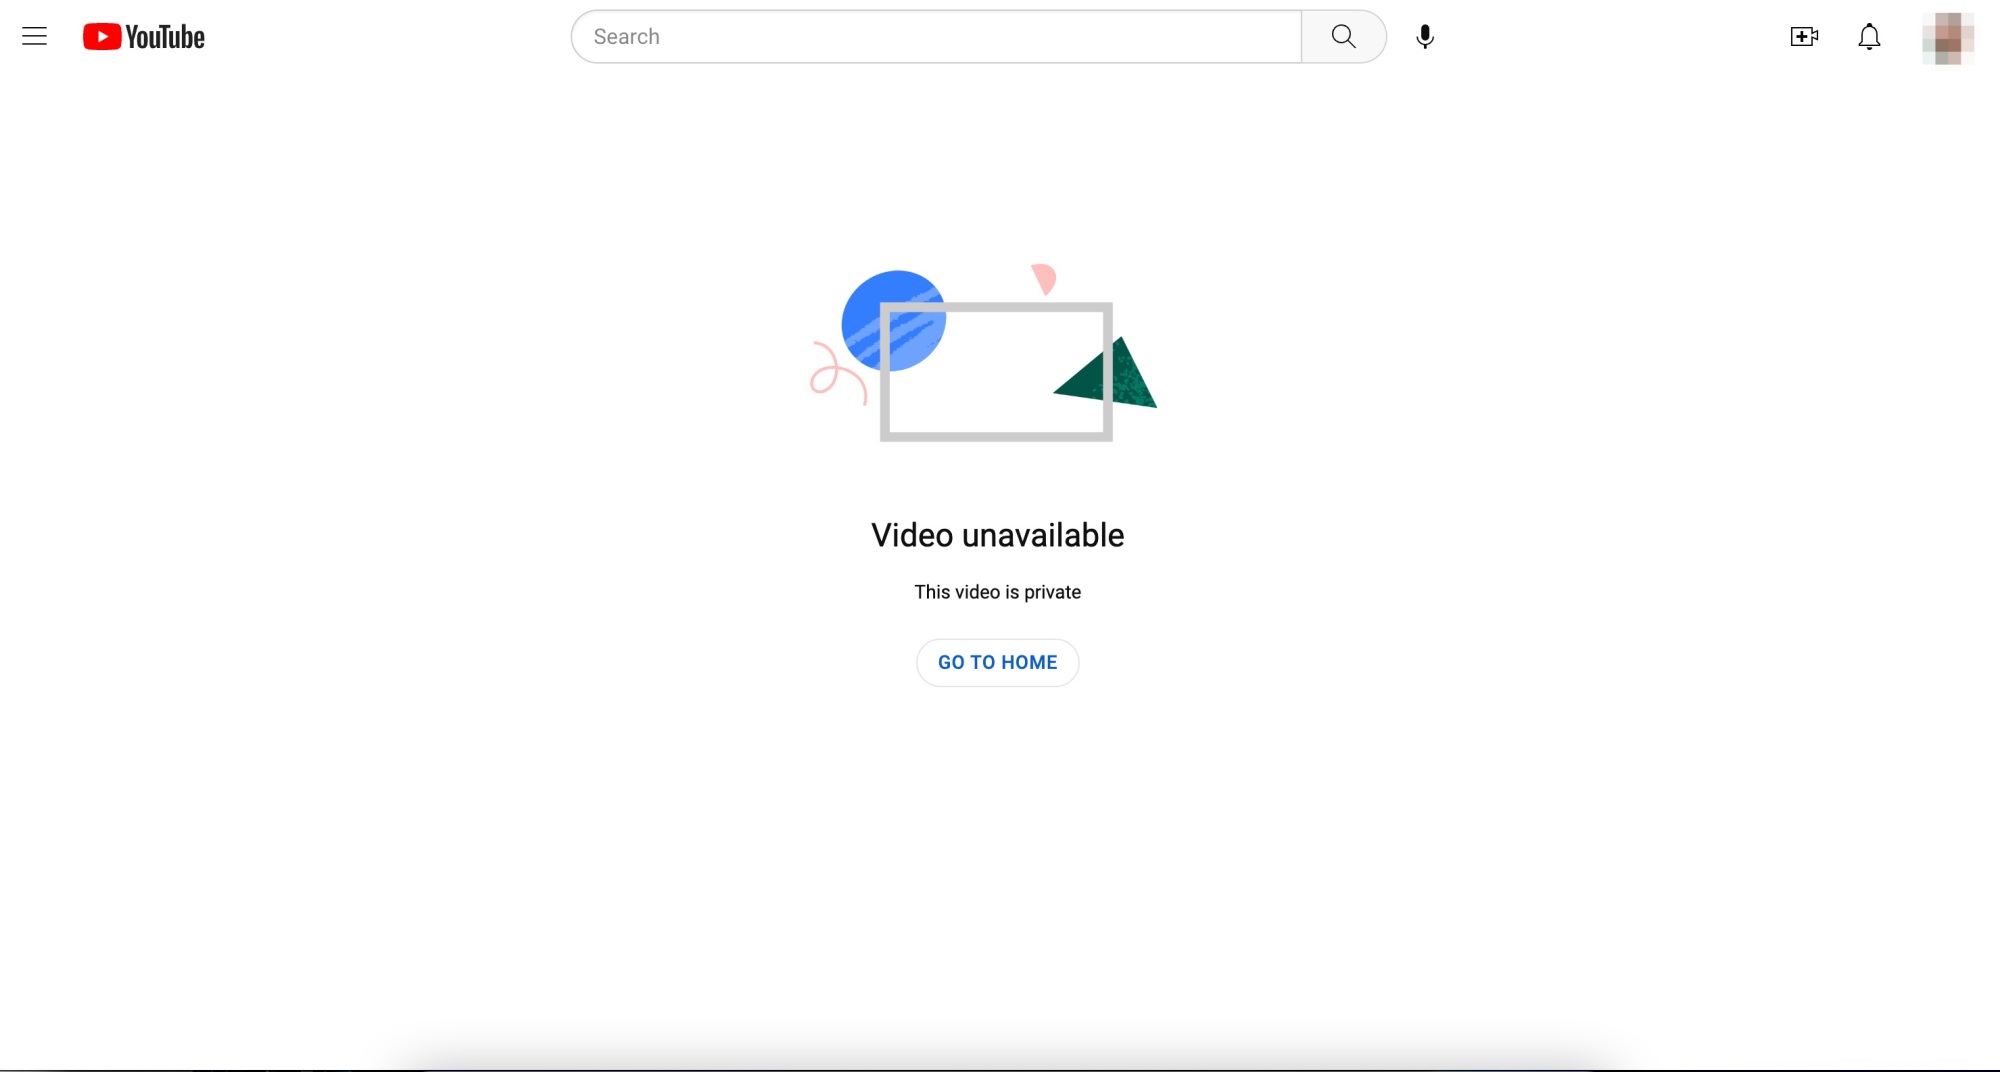 Événement Google Livestream montrant qu'il est désormais privé